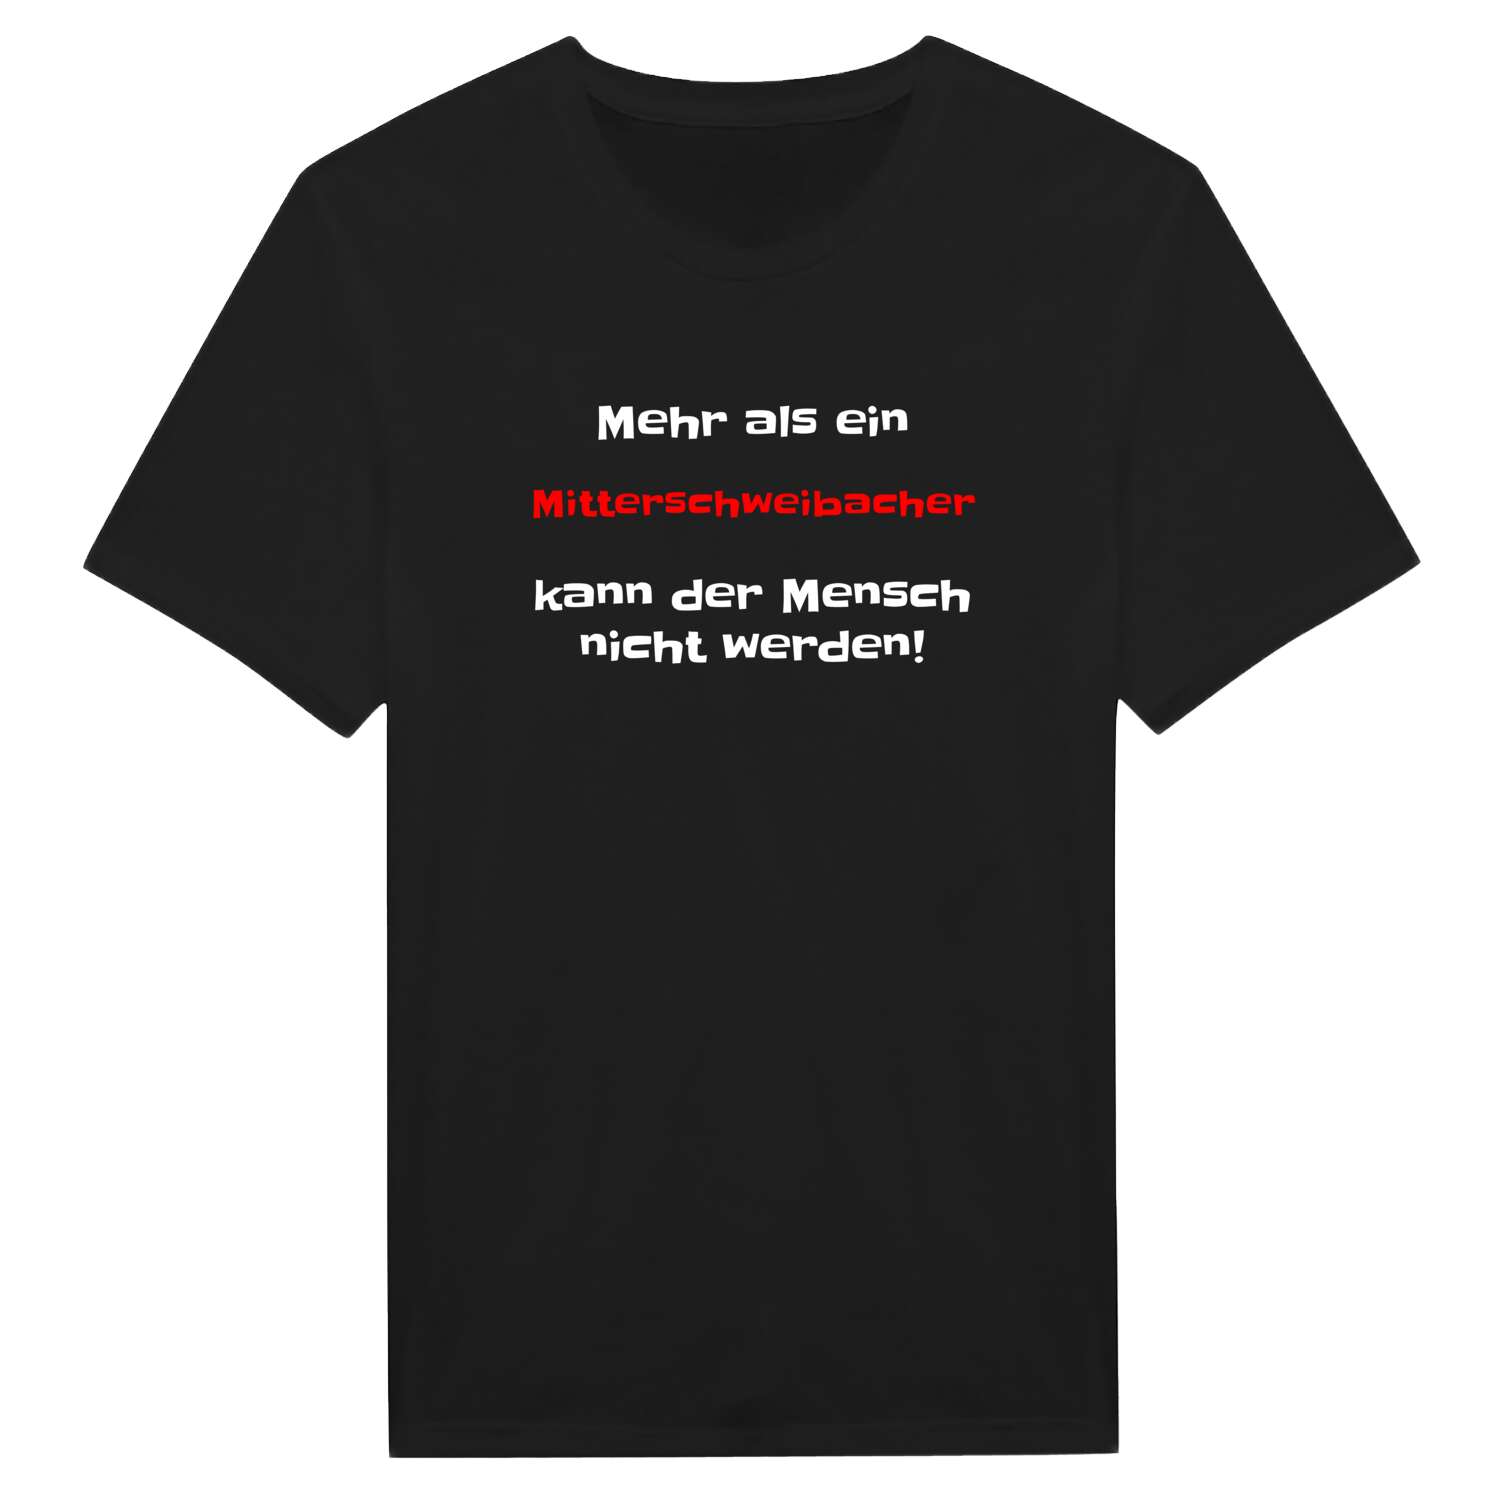 Mitterschweibach T-Shirt »Mehr als ein«